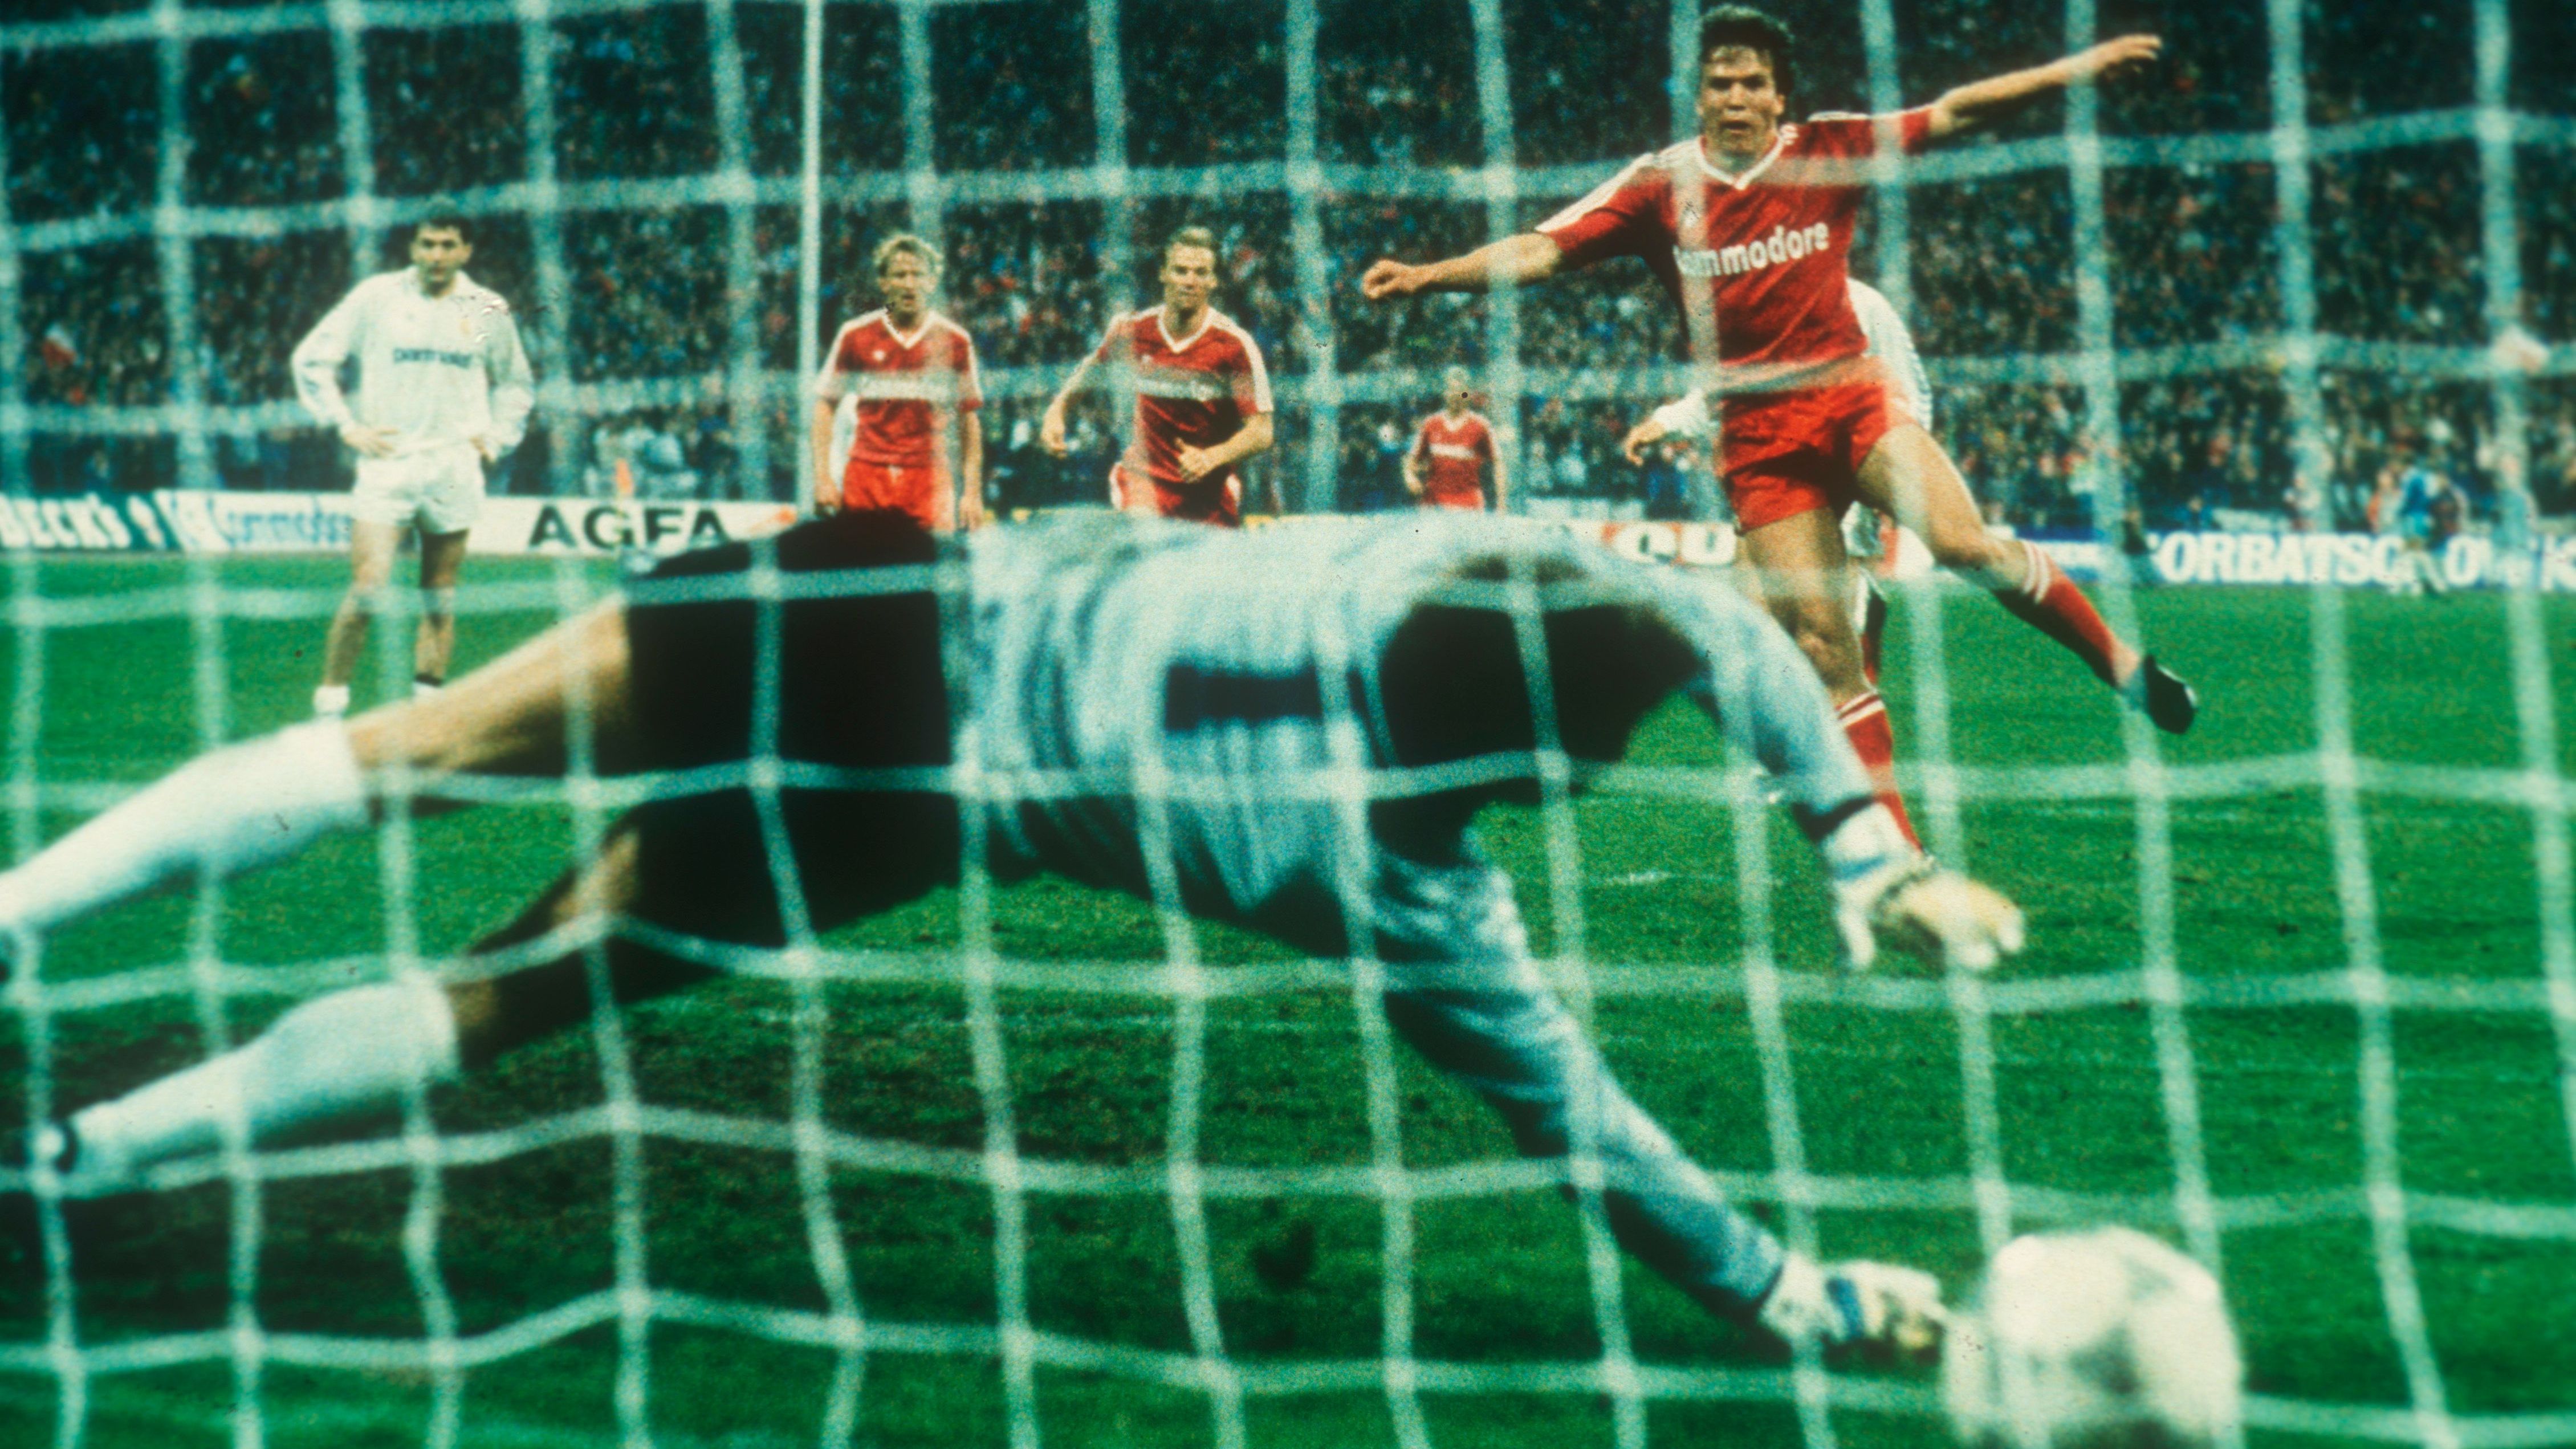 <strong>8. April 1987: Matchwinner Matthäus</strong><br> Das insgesamt dritte Aufeinandertreffen zwischen Bayern und Real - und zum zweiten Mal gehen die Münchner als Sieger vom Platz. Beim 4:1 im Halbfinale des Europokals der Landesmeister heißt der überragende Mann auf dem Platz Lothar Matthäus. Der damals 26-Jährige erzielt im Hinspiel in München zwei Tore. Ein 0:1 in Madrid zwei Wochen später genügt den Bayern fürs Finale, das allerdings 1:2 gegen den FC Porto verloren geht.